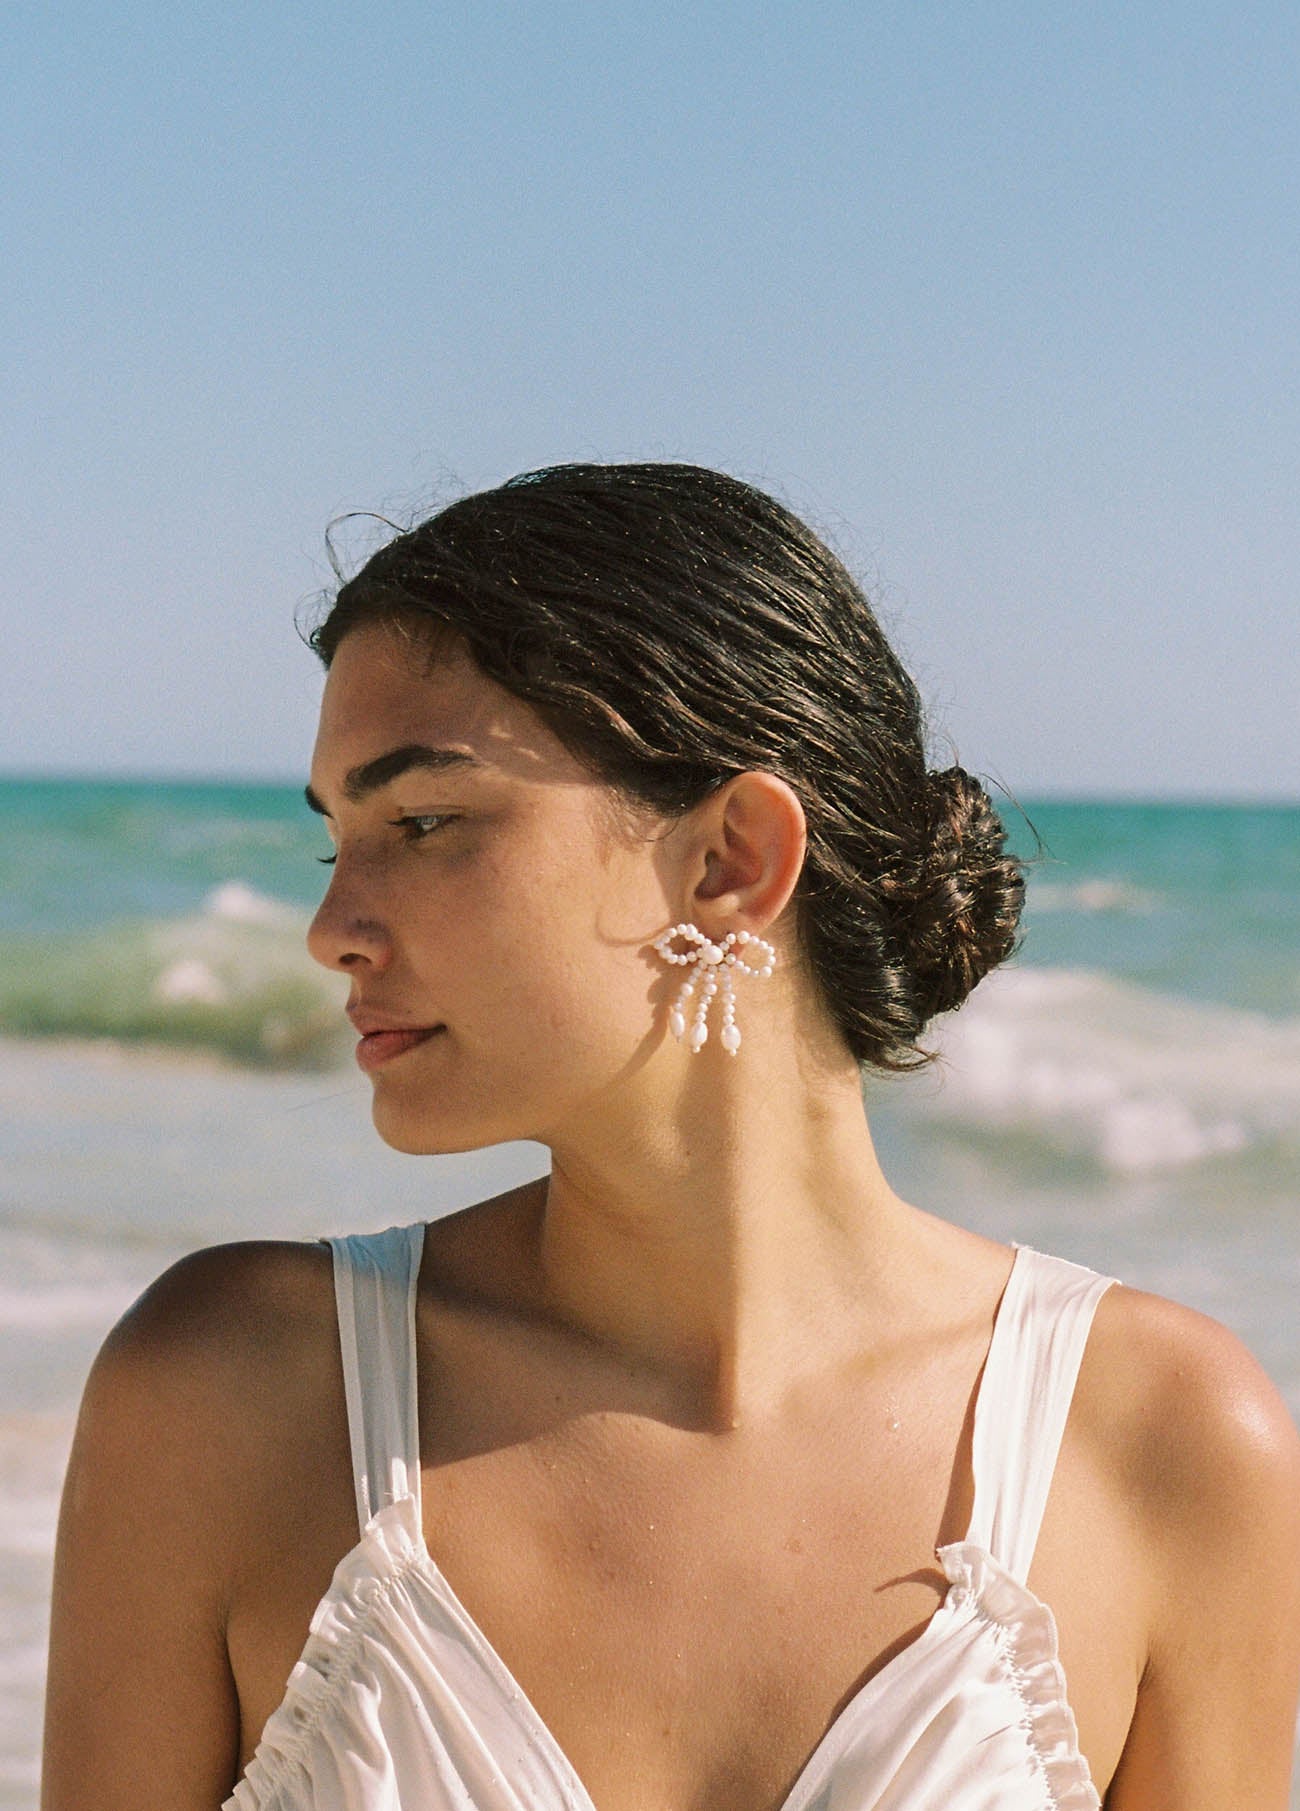 Petra earrings